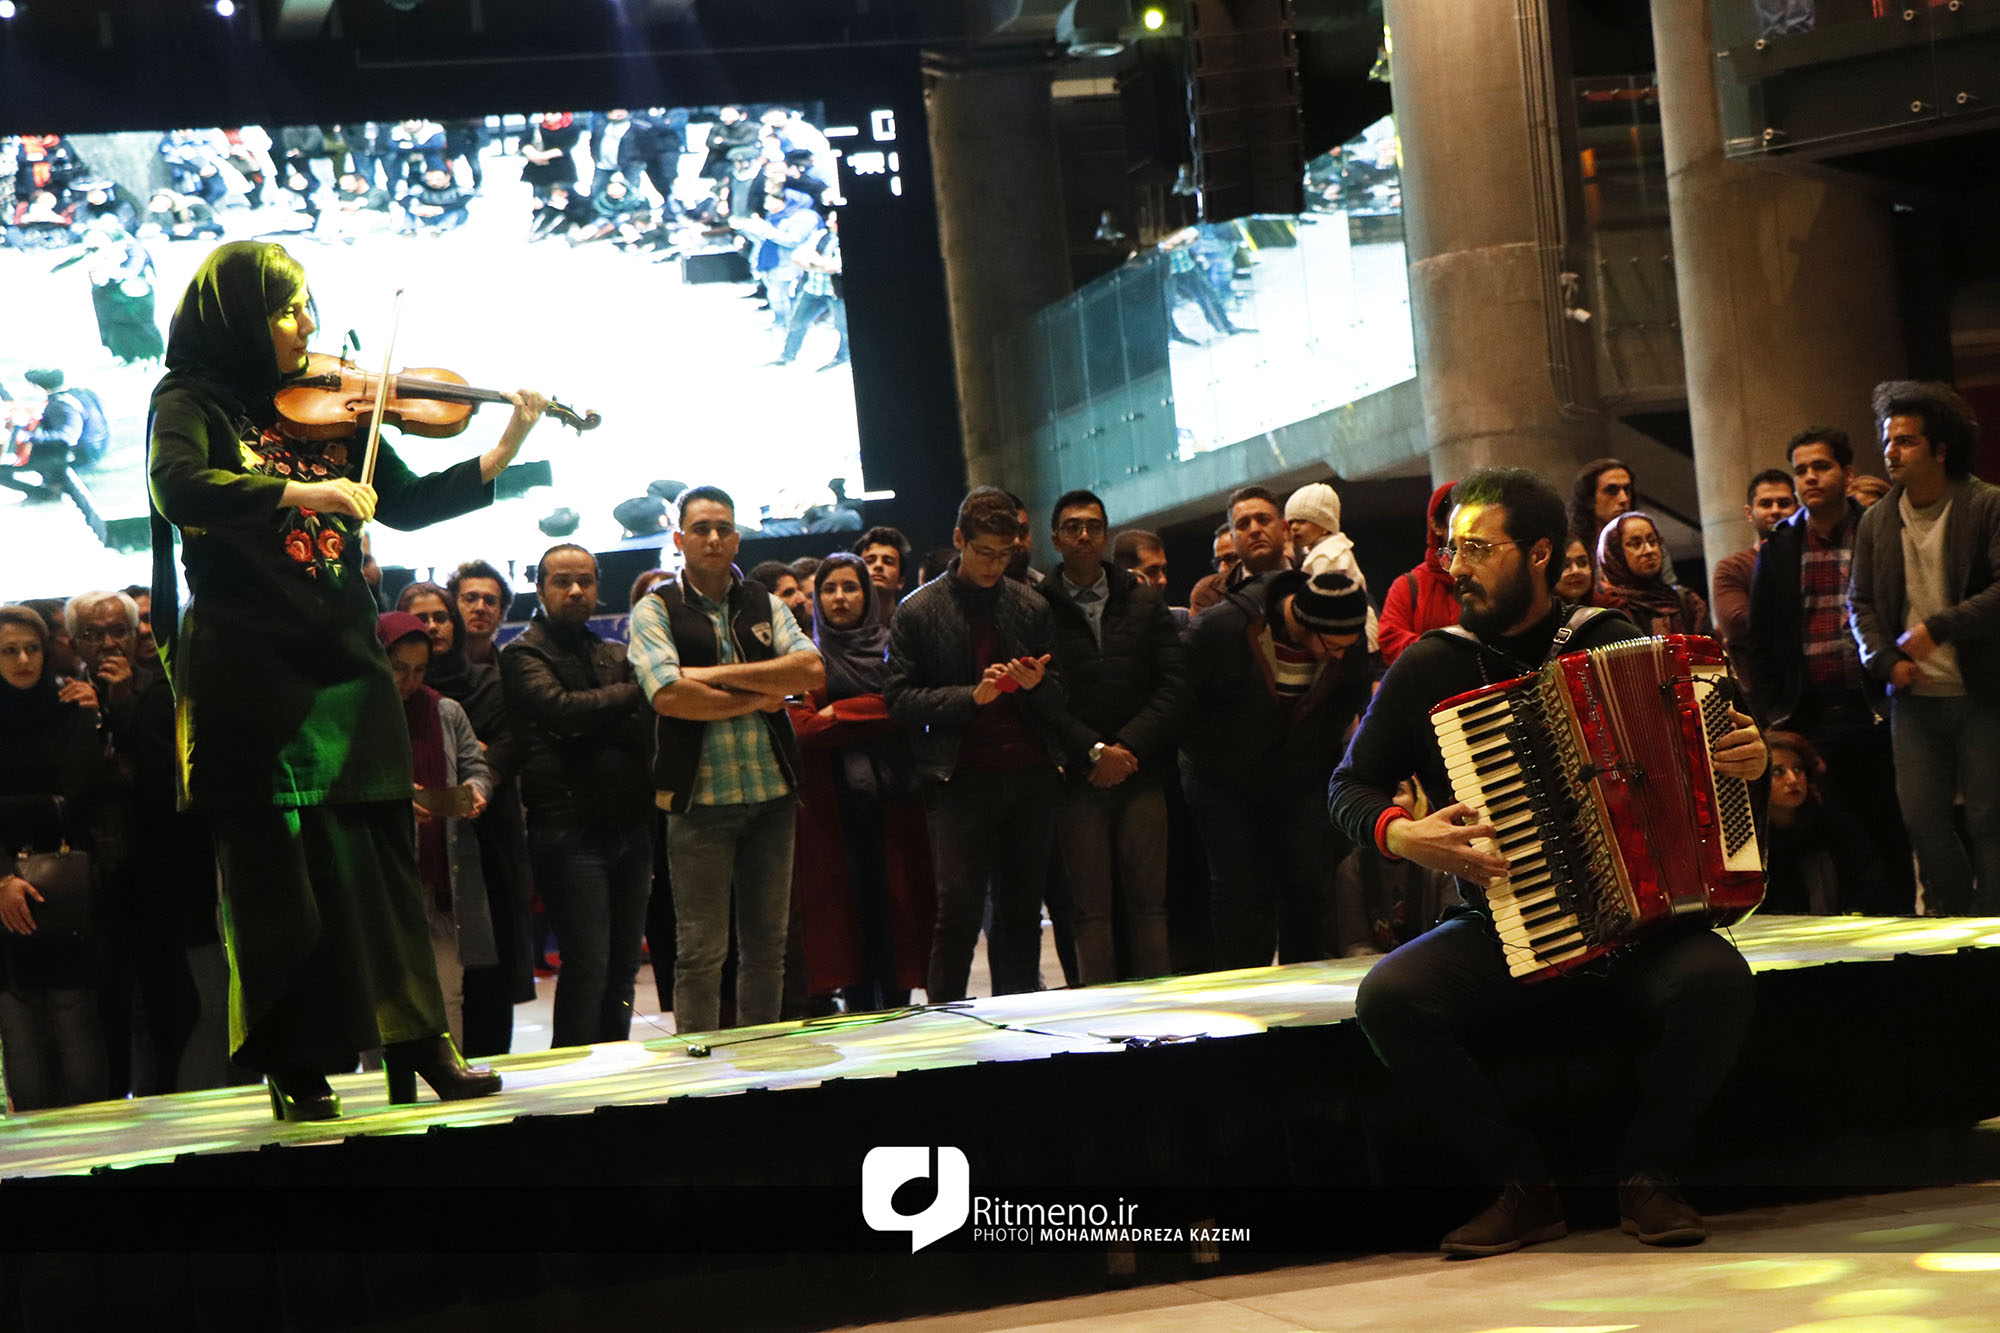 جشن امضای آلبوم « درنادئون» در شیراز/ استقبال از حضور مهرداد مهدی و آسو کهزادی